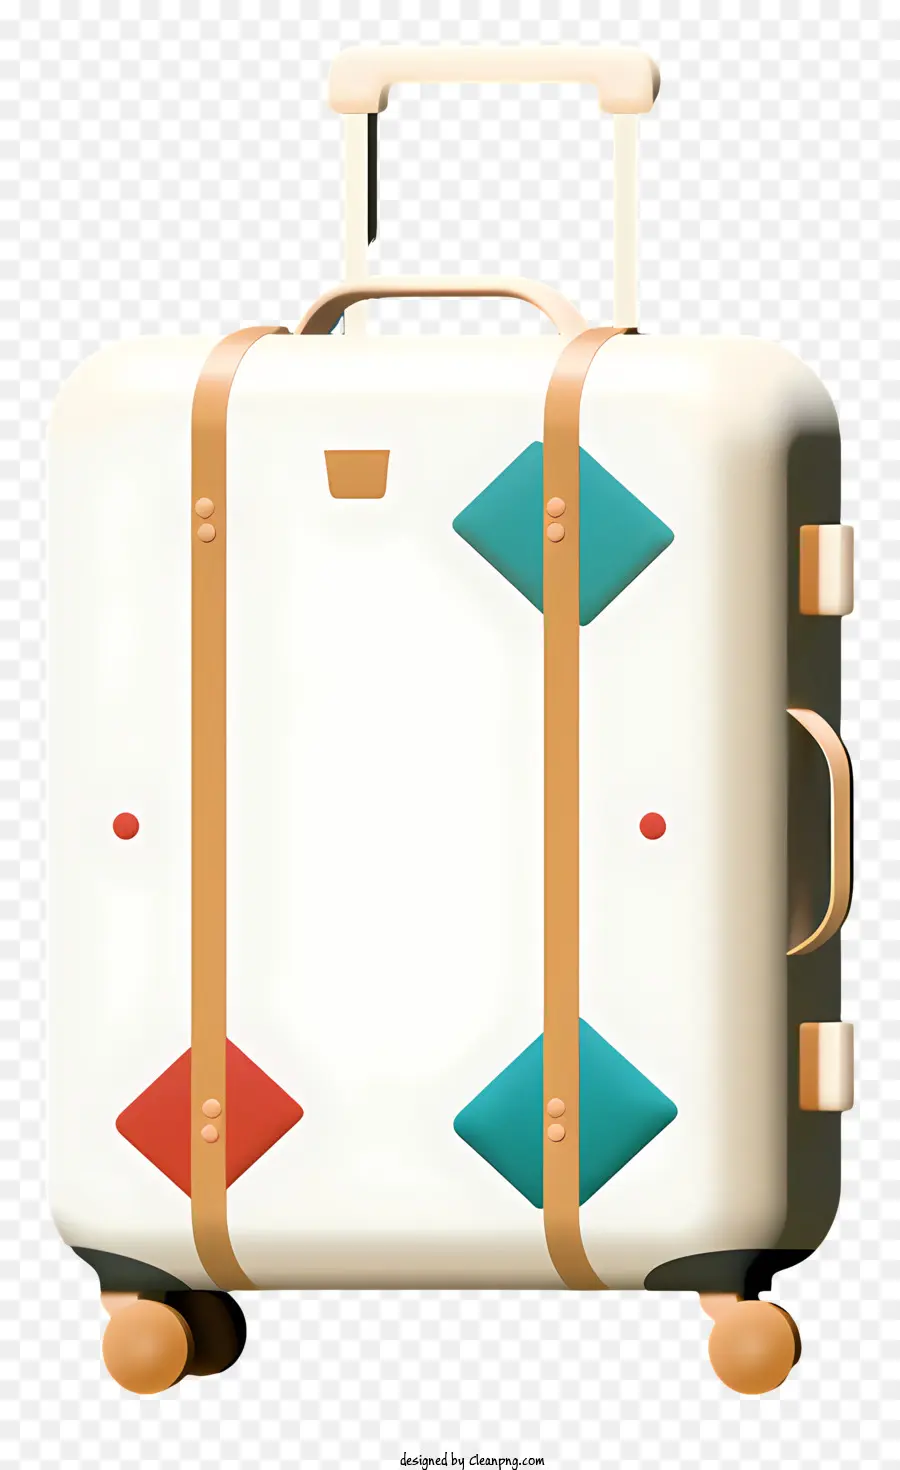 valigia ampia valigia bianca manico verde aprire la valigia aperta contenuto - Valigia bianca con manico verde, aperto, contenuto visualizzato